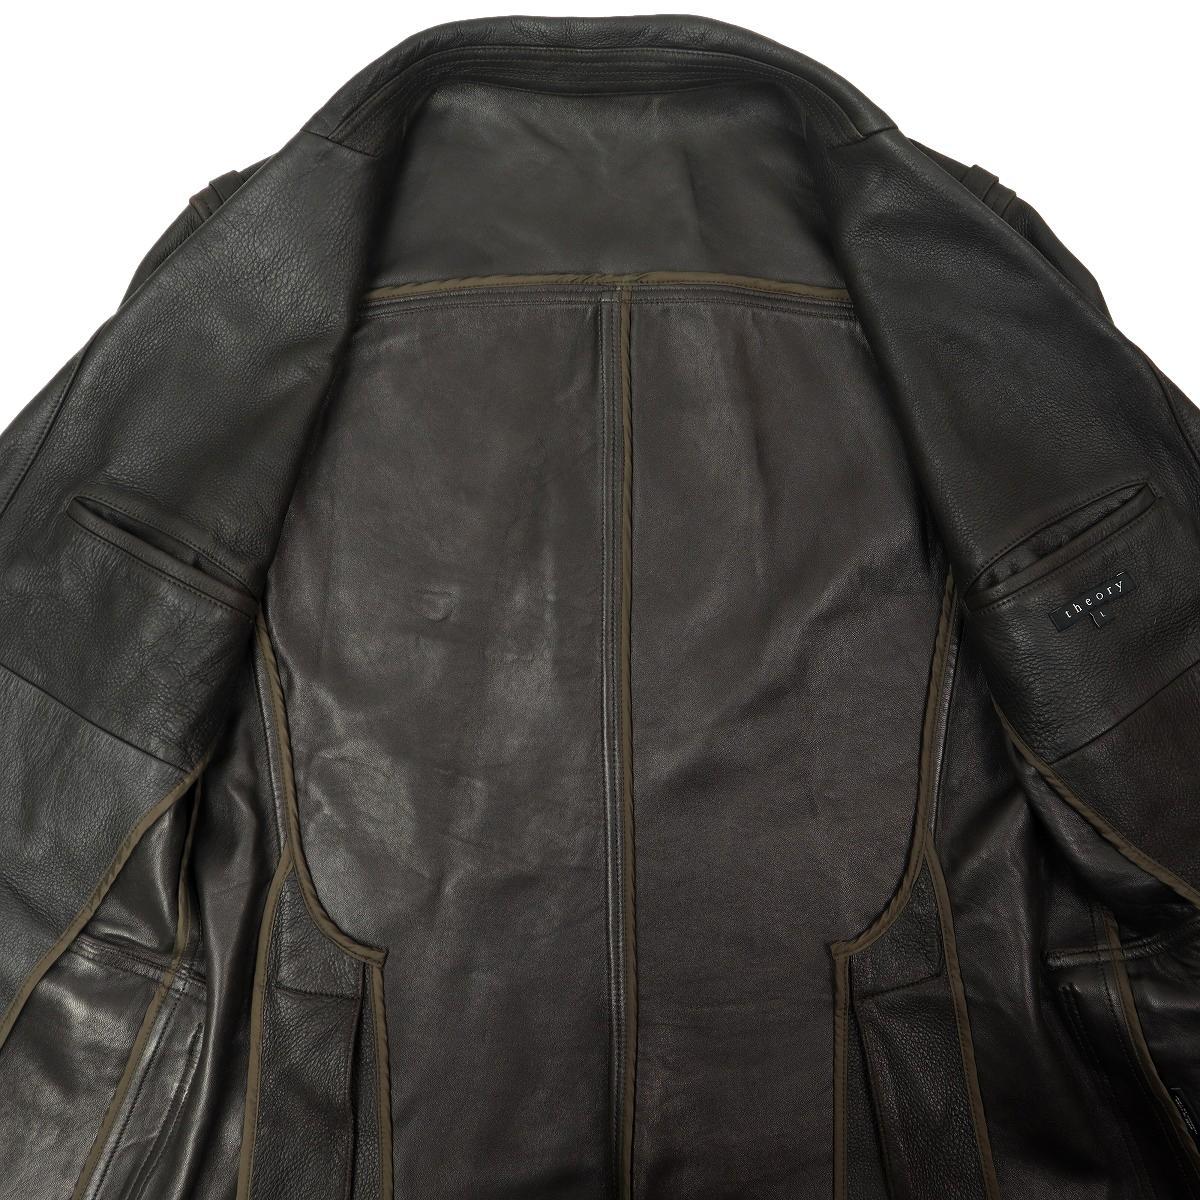 [S1822][ большой размер L 42][ кожа ягненка ]Theory теория кожаный жакет tailored jacket блейзер все кожа мужской 